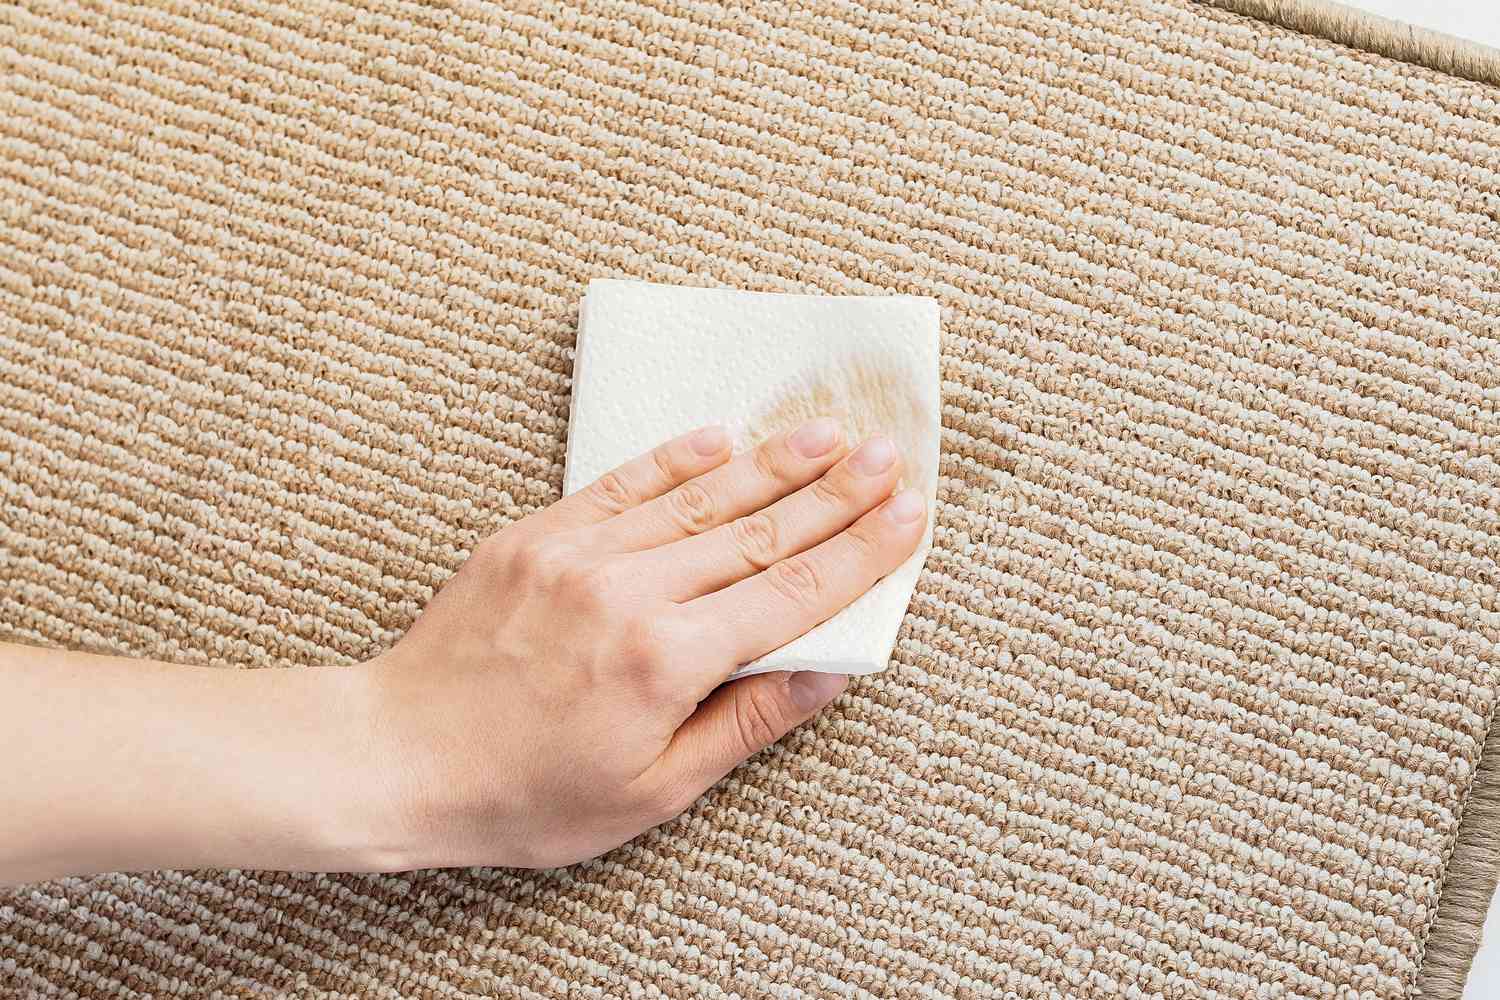 Toalha de papel limpa limpando a mancha de molho de soja em um tapete castanho